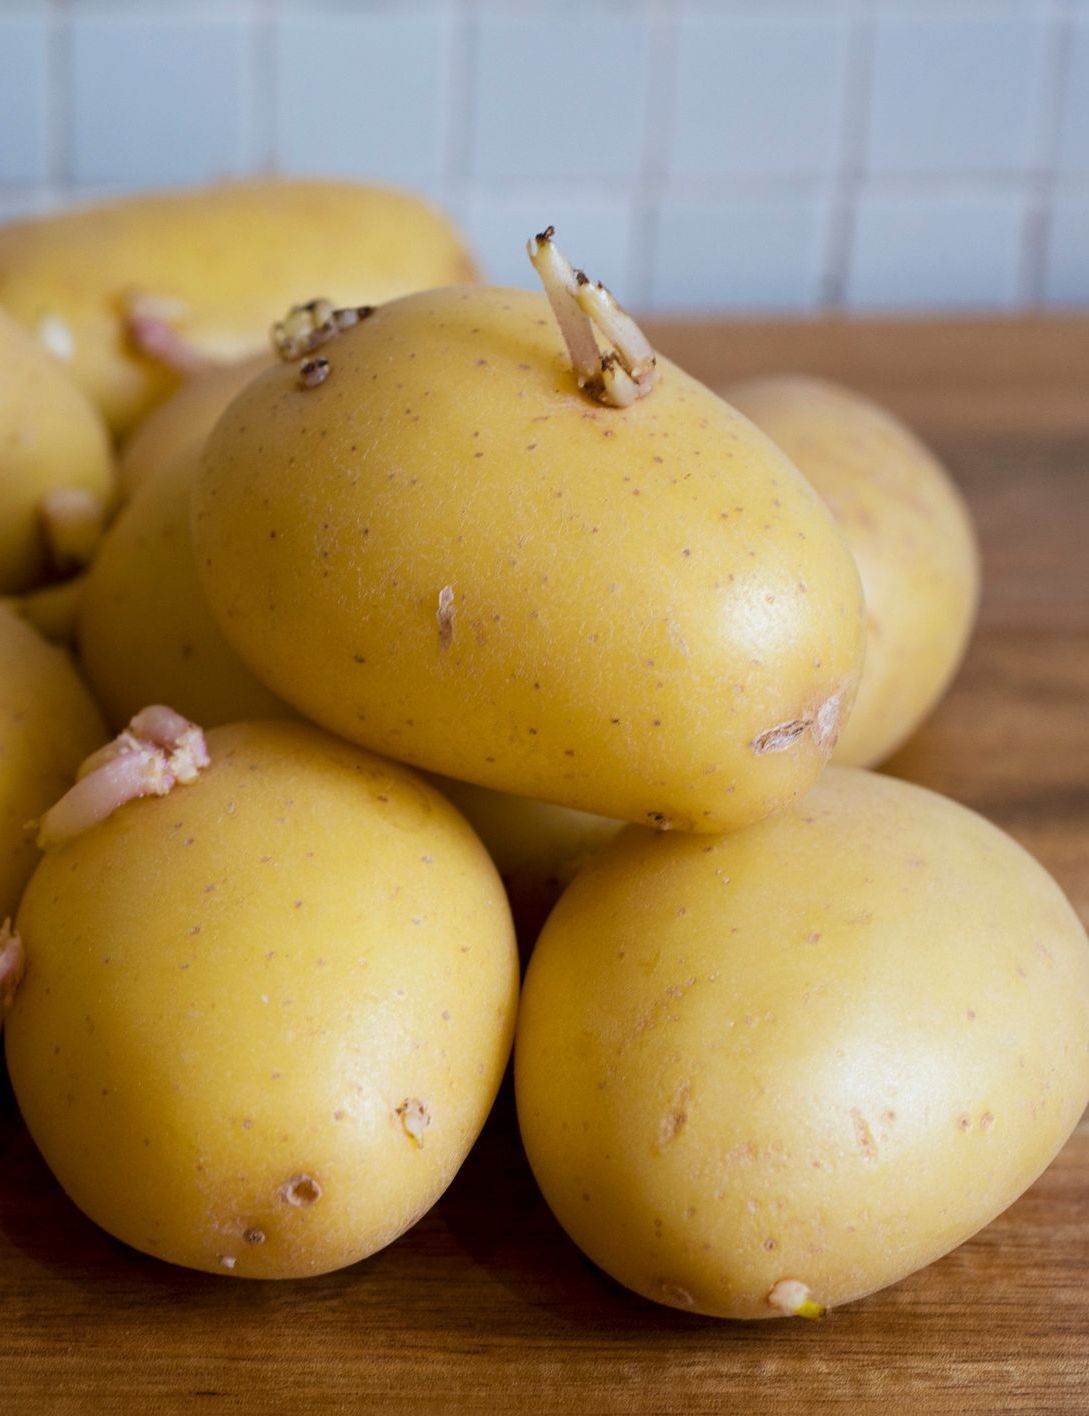 comment éviter que les pommes de terre germent trop vite ?